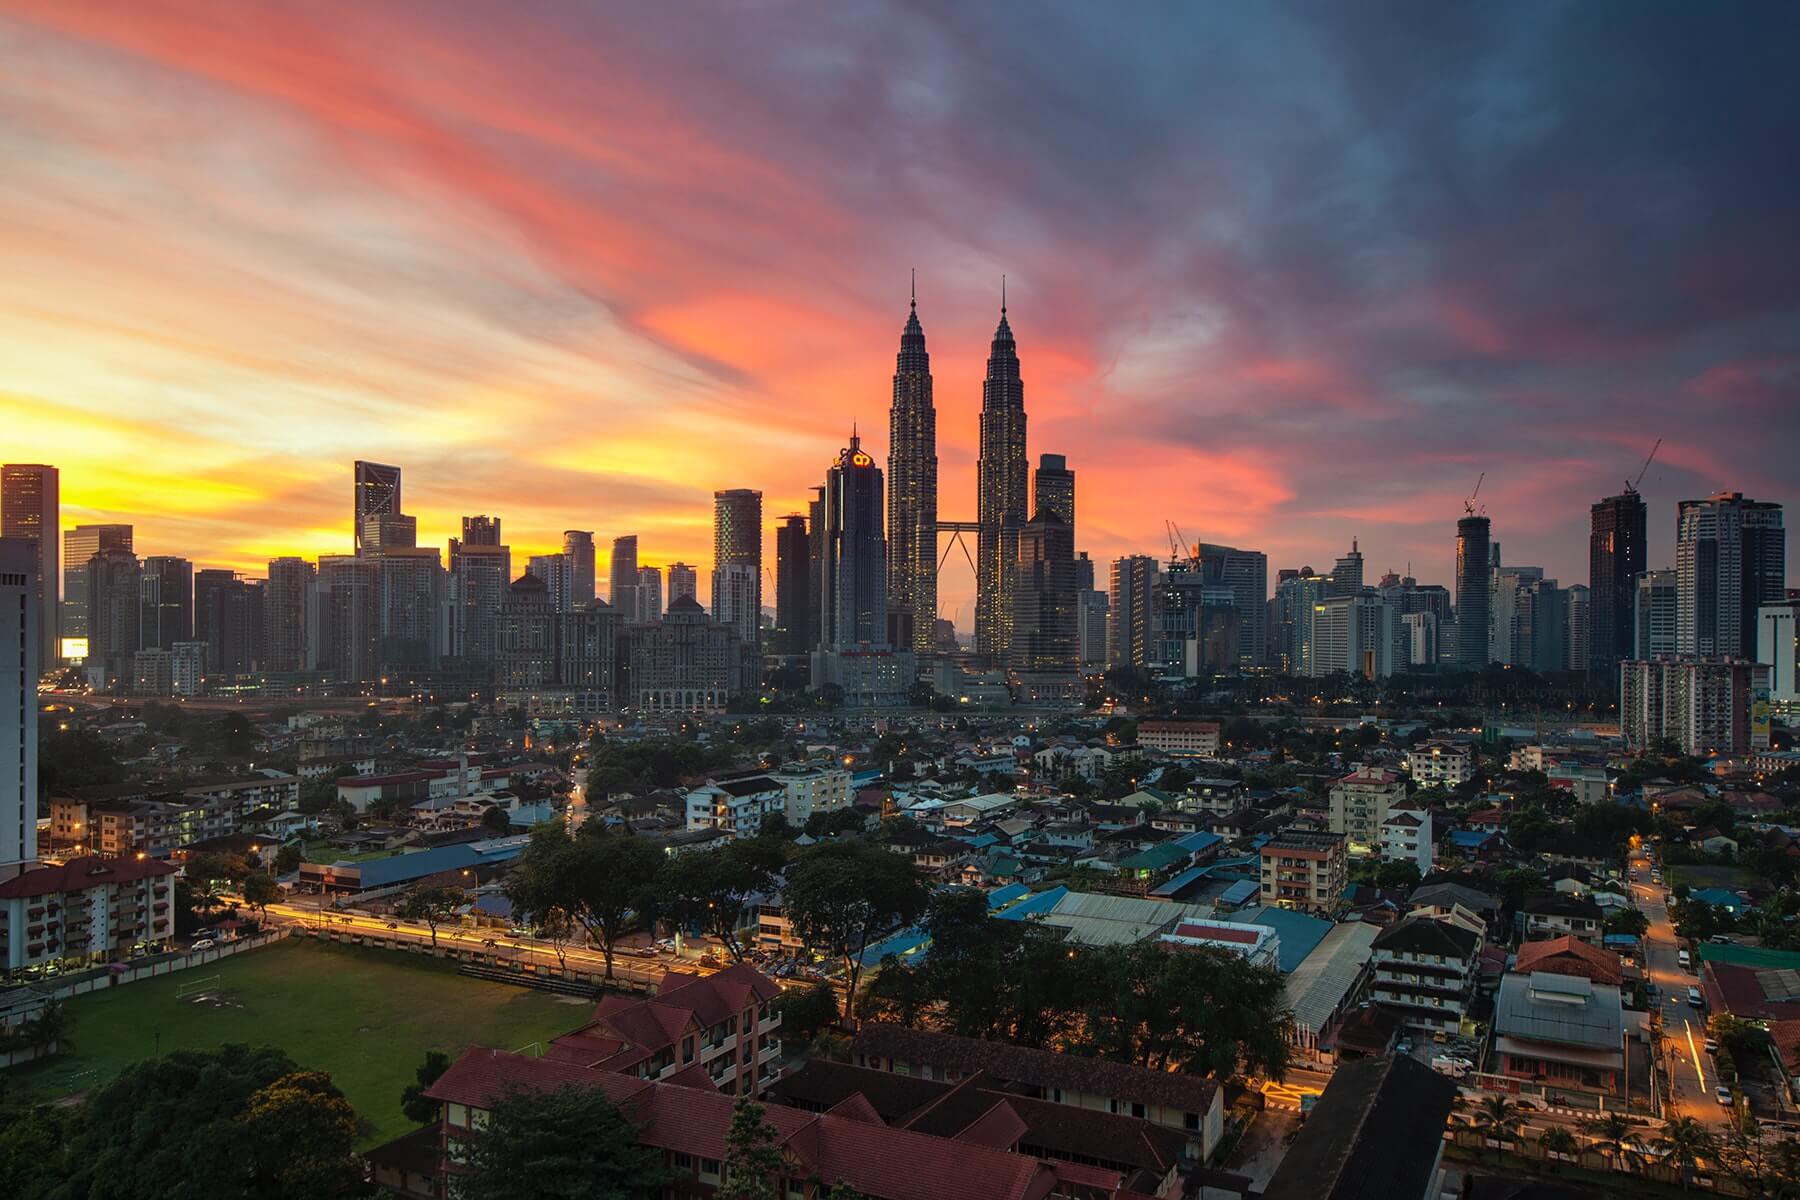 KLCC Skyline in Malaysia